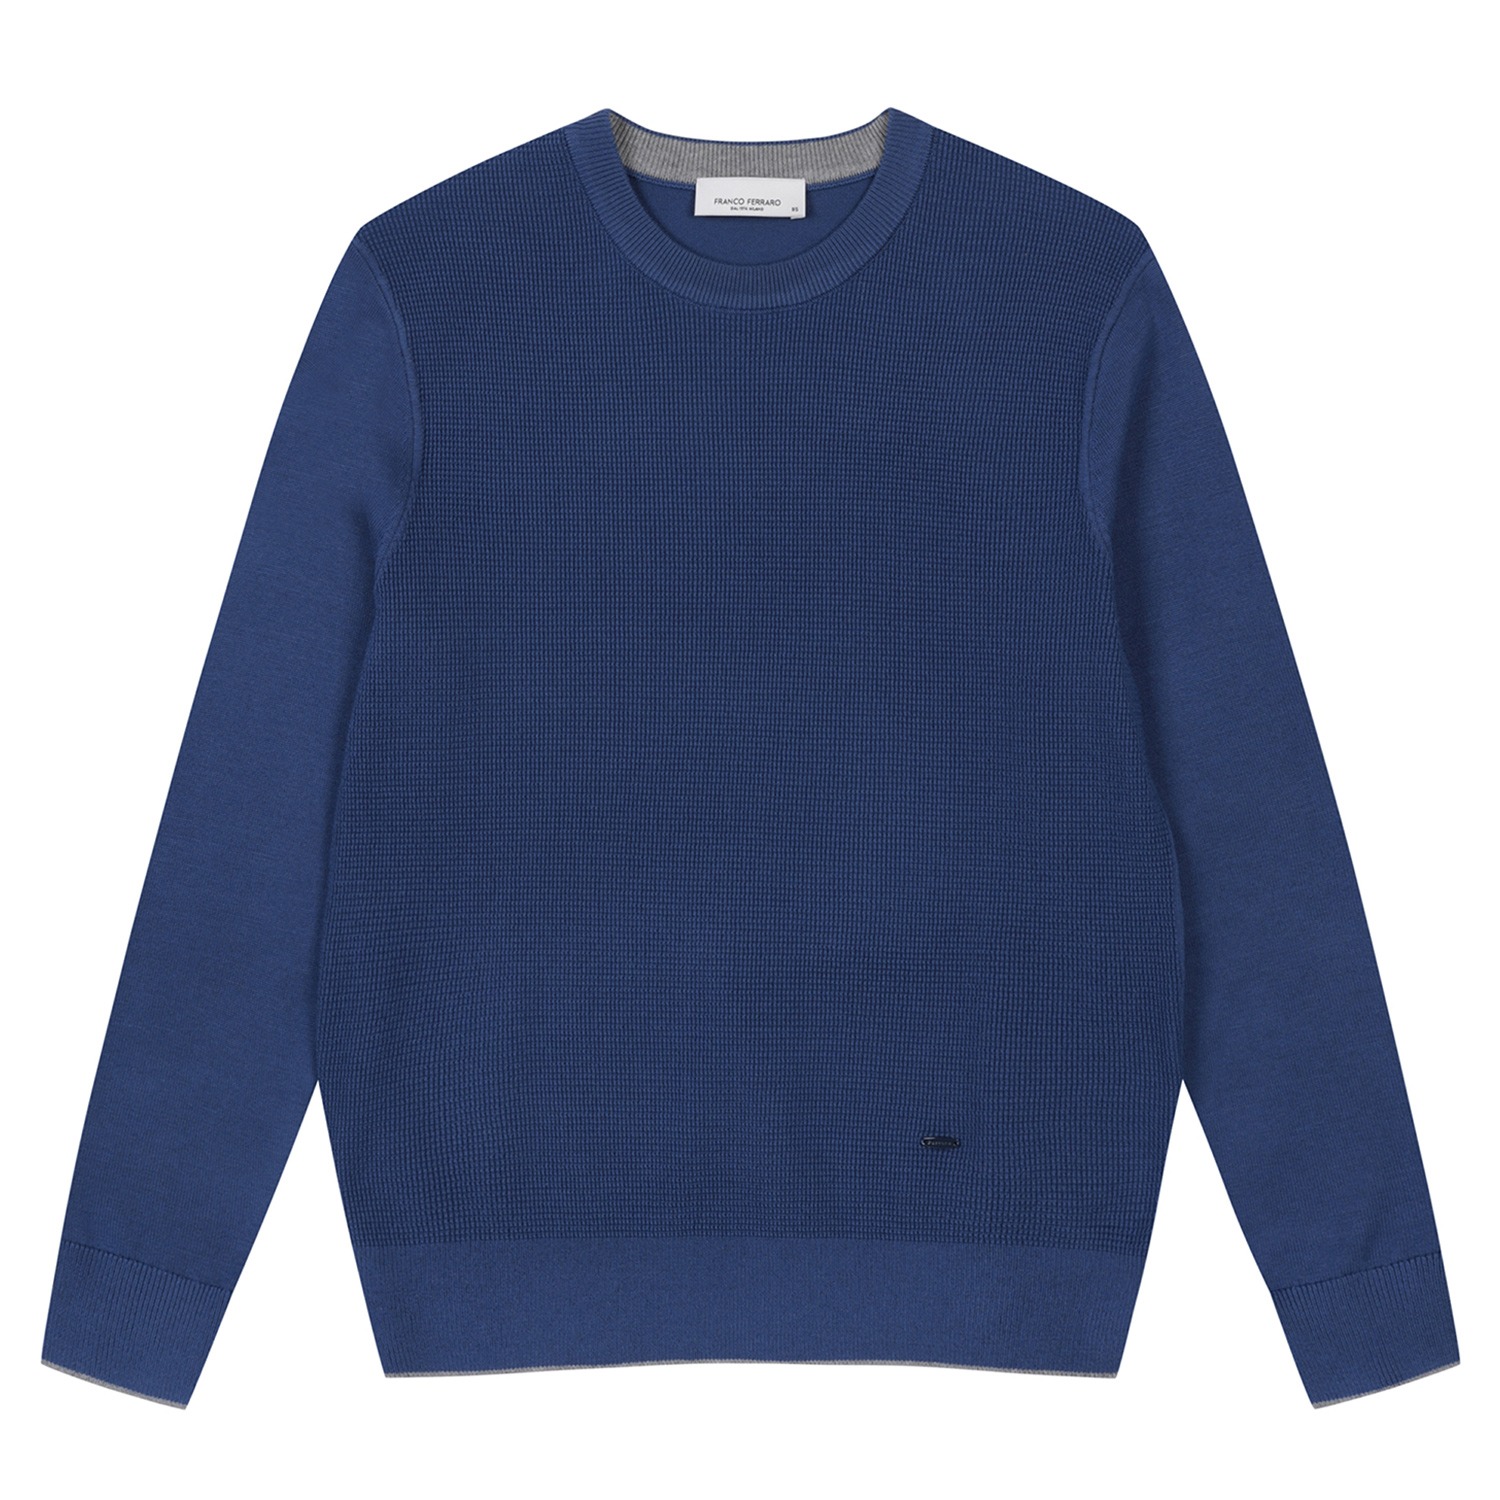 남성 배색포인트 라운드 스웨터 블루 (AMSDRD10243)